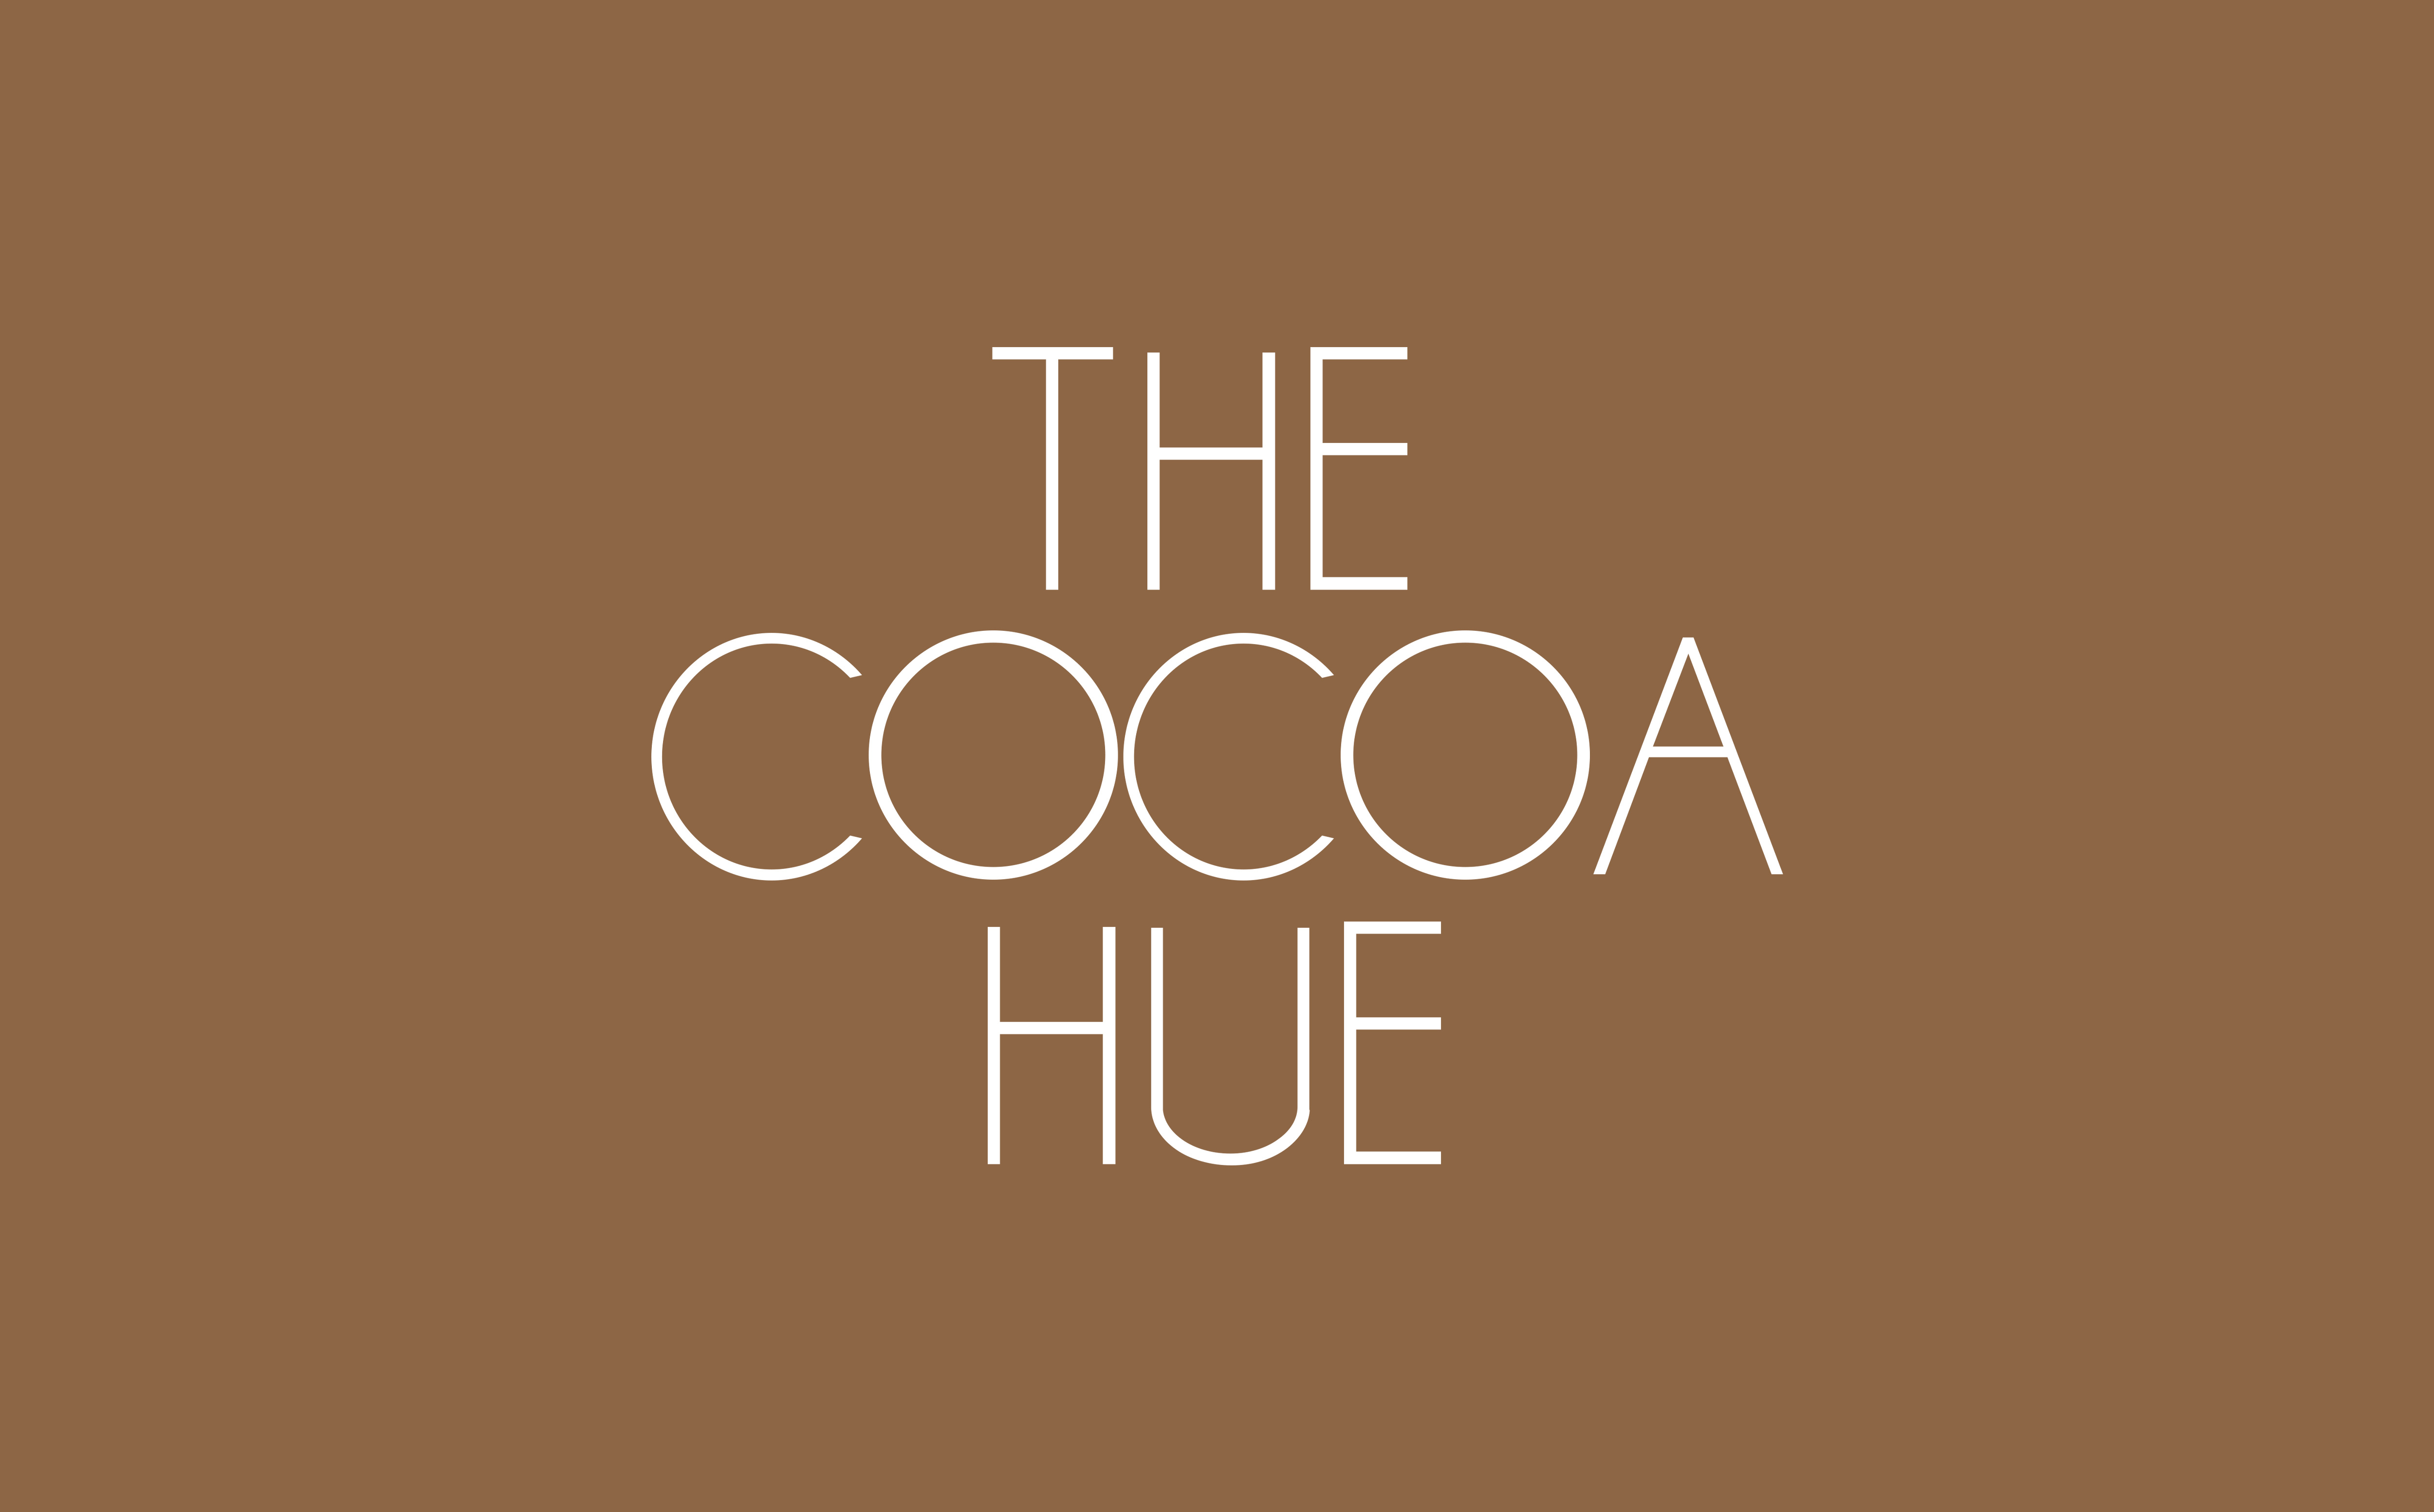 The Cocoa Hue